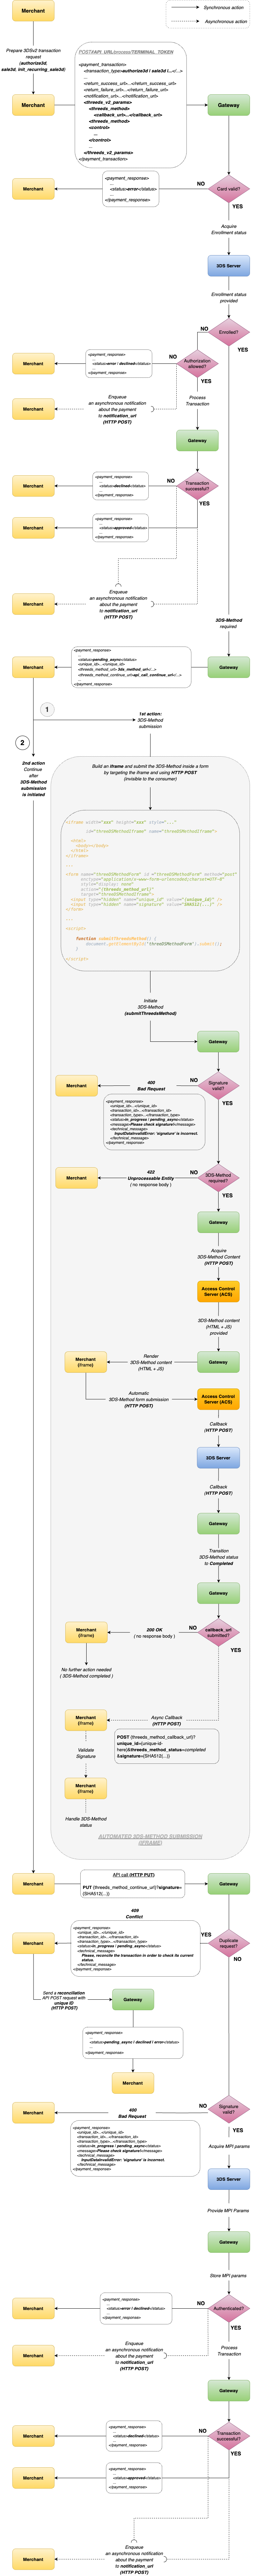 3DSv2 authentication flow diagram with 3DS-Method